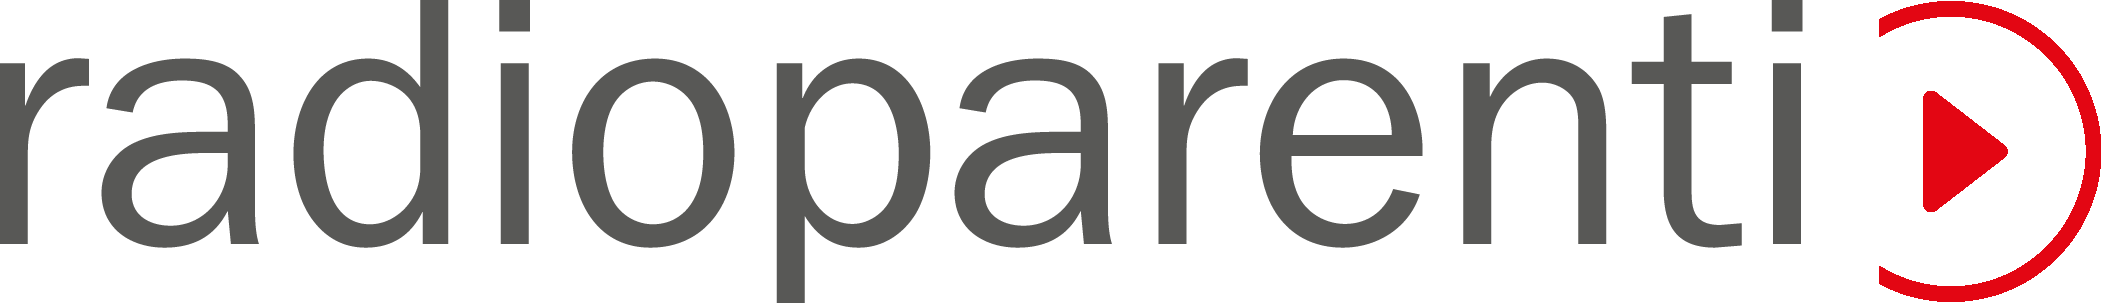 radioparenti - Logo